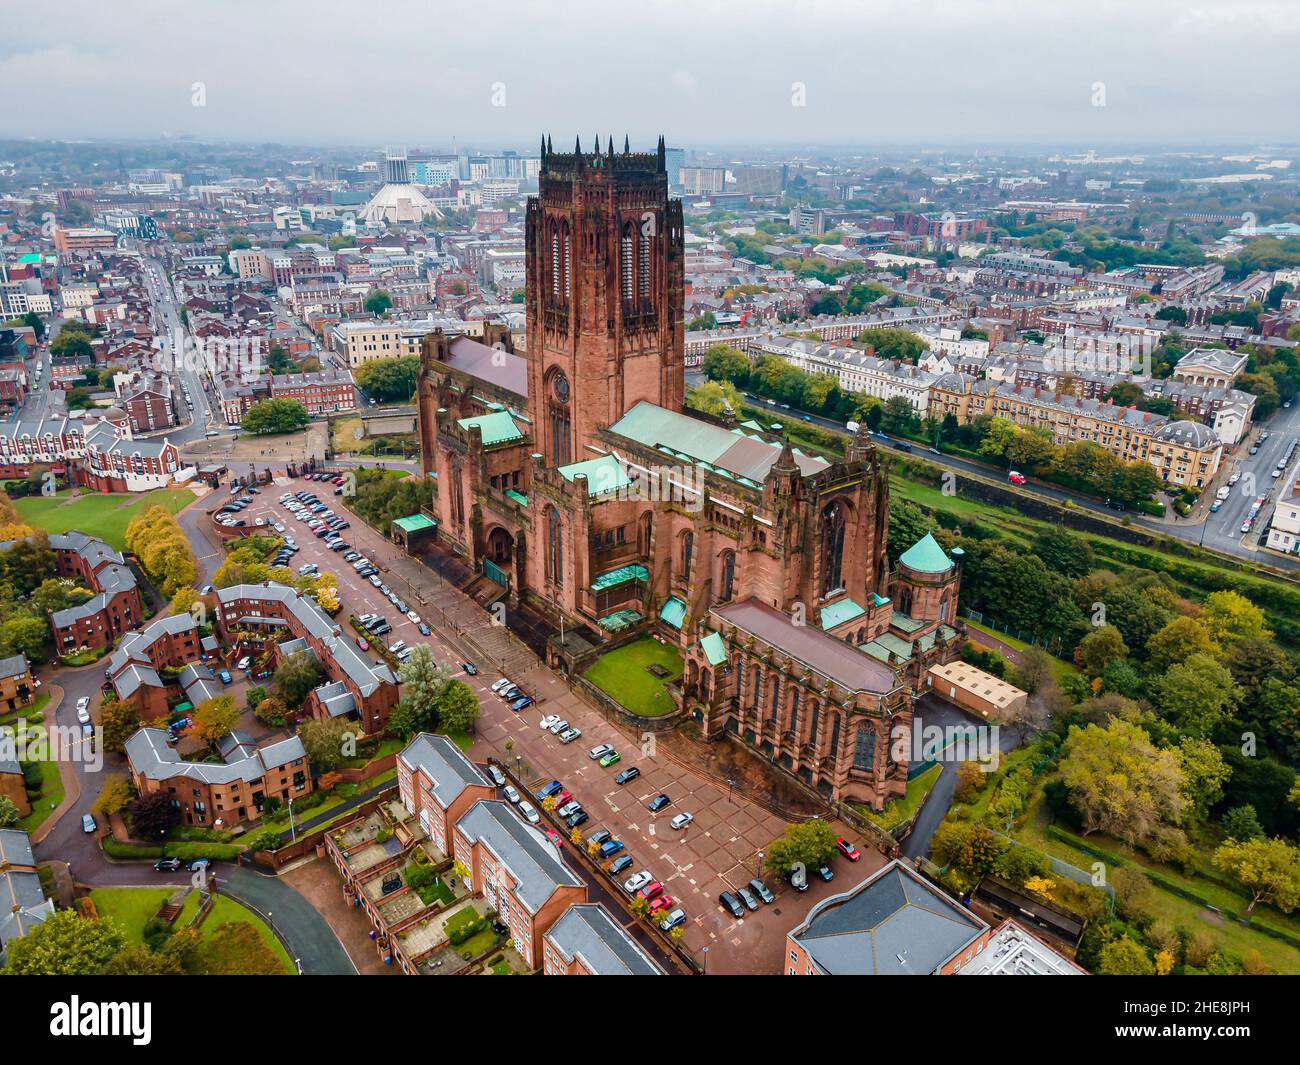 Photographie aérienne de la cathédrale de Liverpool entourée par le paysage urbain en Angleterre Banque D'Images